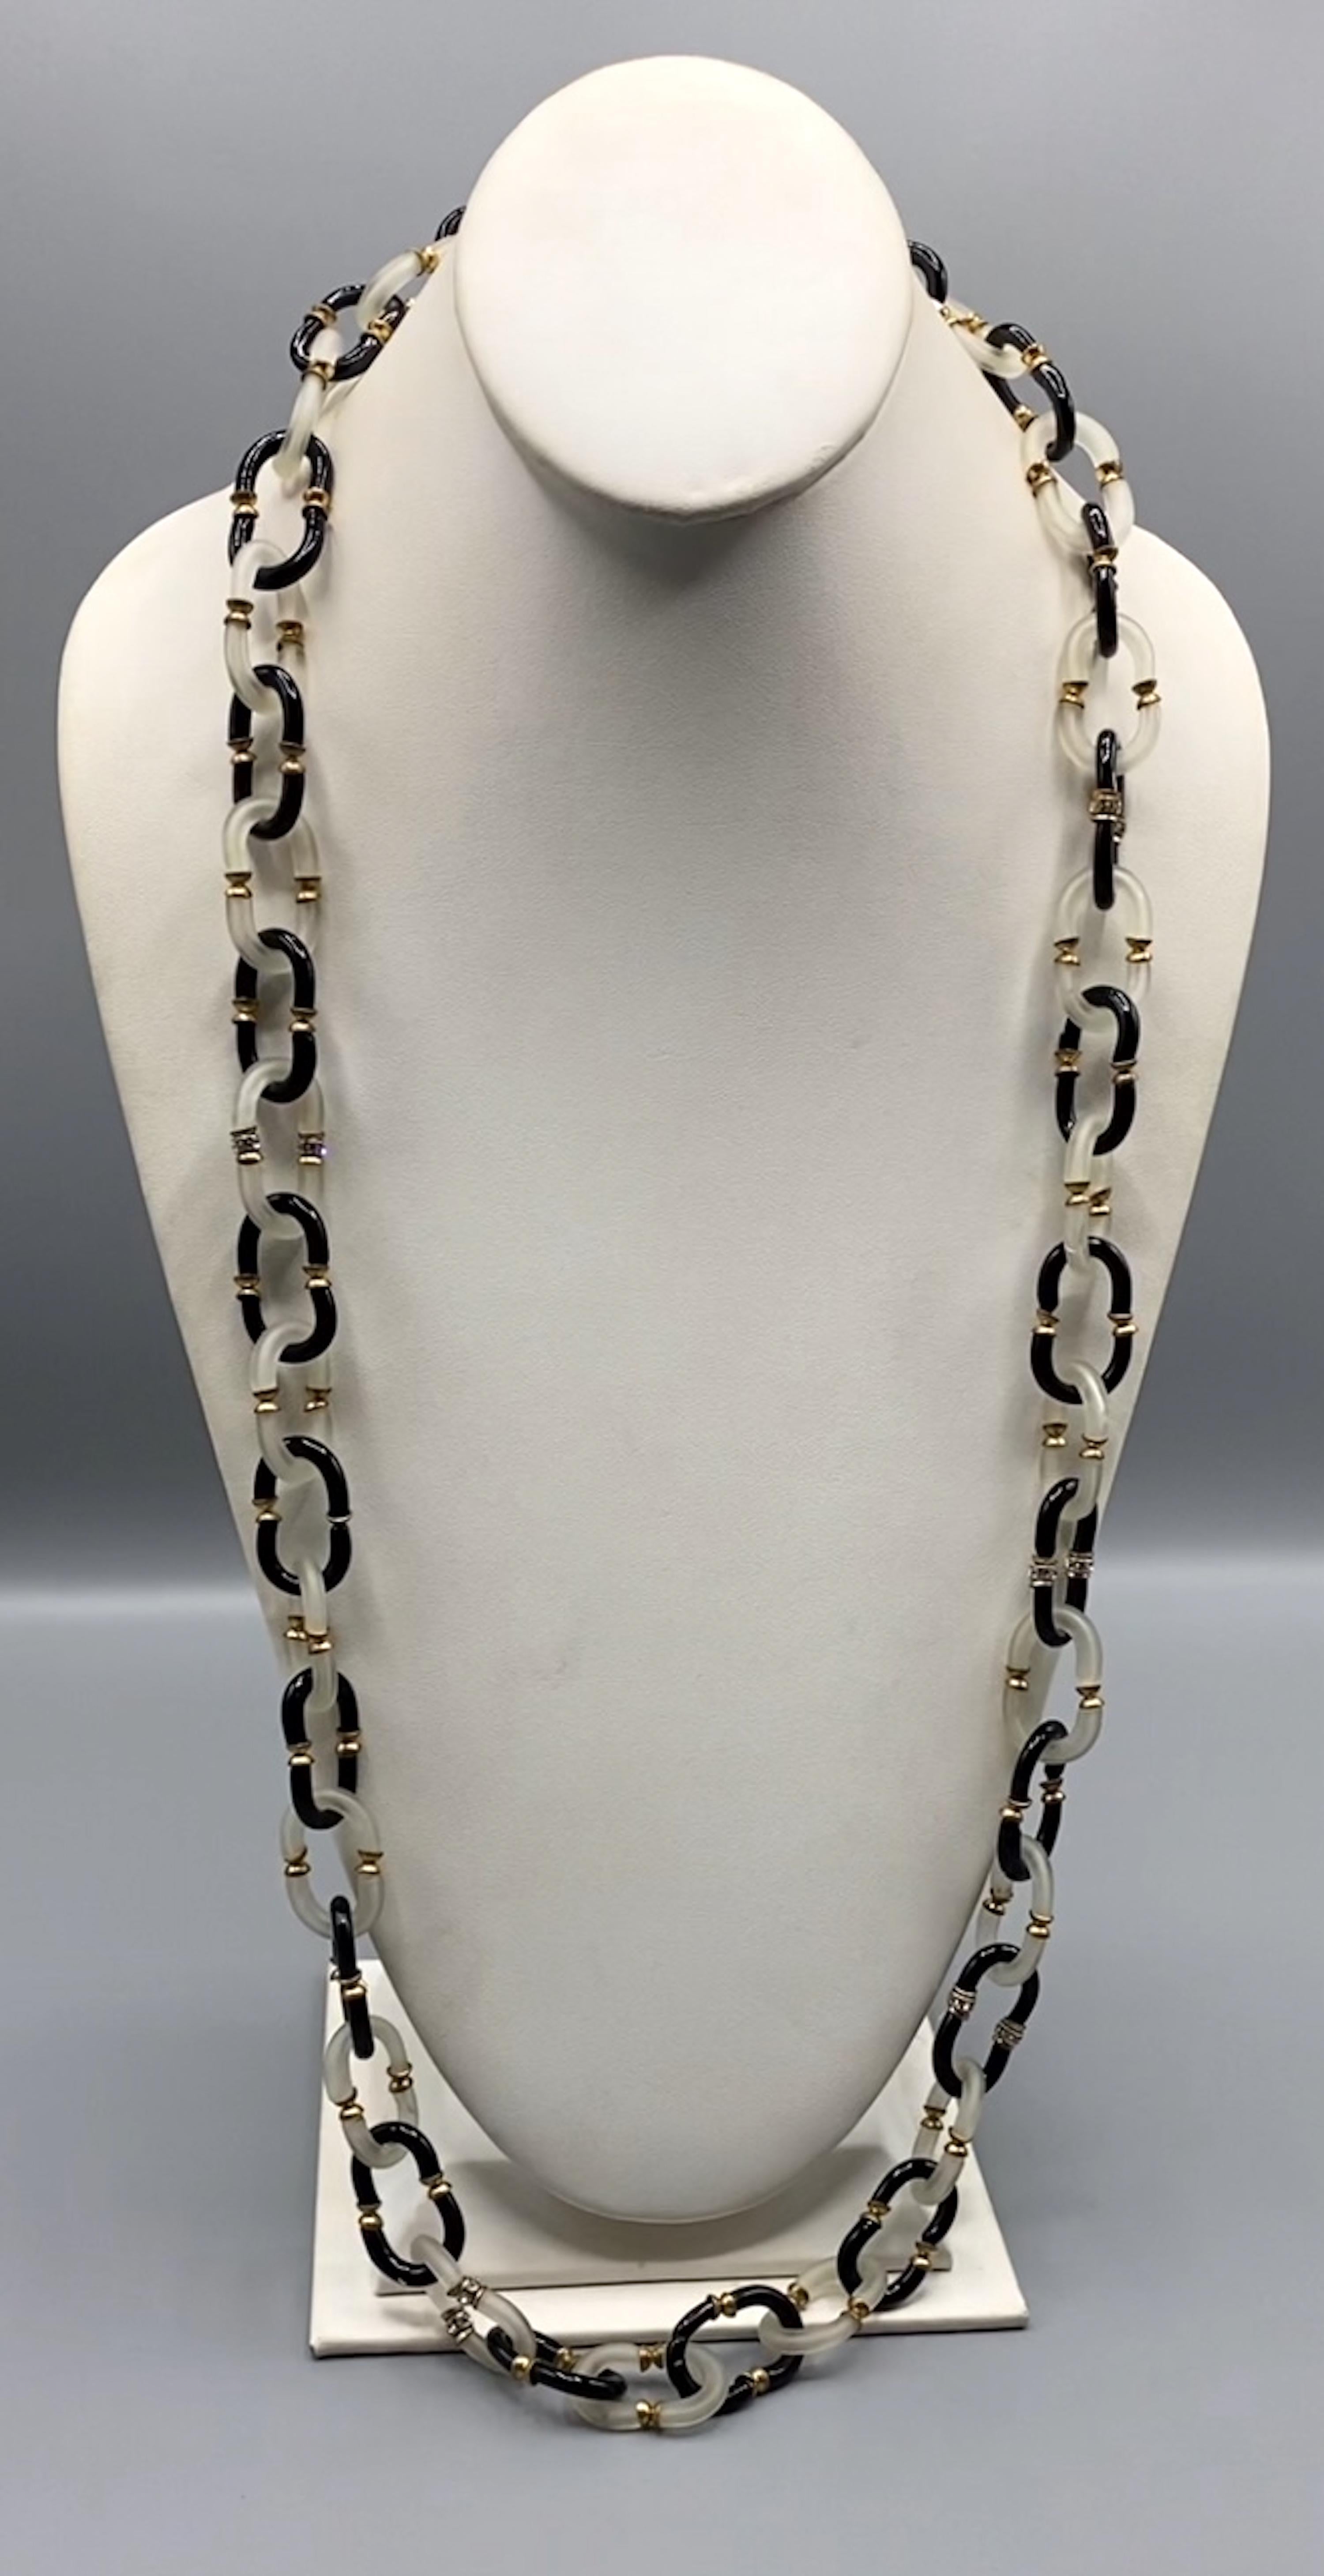 Ravissant collier en chaîne en verre d'Archimede Seguso d'Italie. Les maillons de la chaîne sont formés à la main à partir de deux pièces de verre en forme de C. Le collier est long de 37 pouces et large de 0,75 pouce.
Fermoir en or avec logo AS